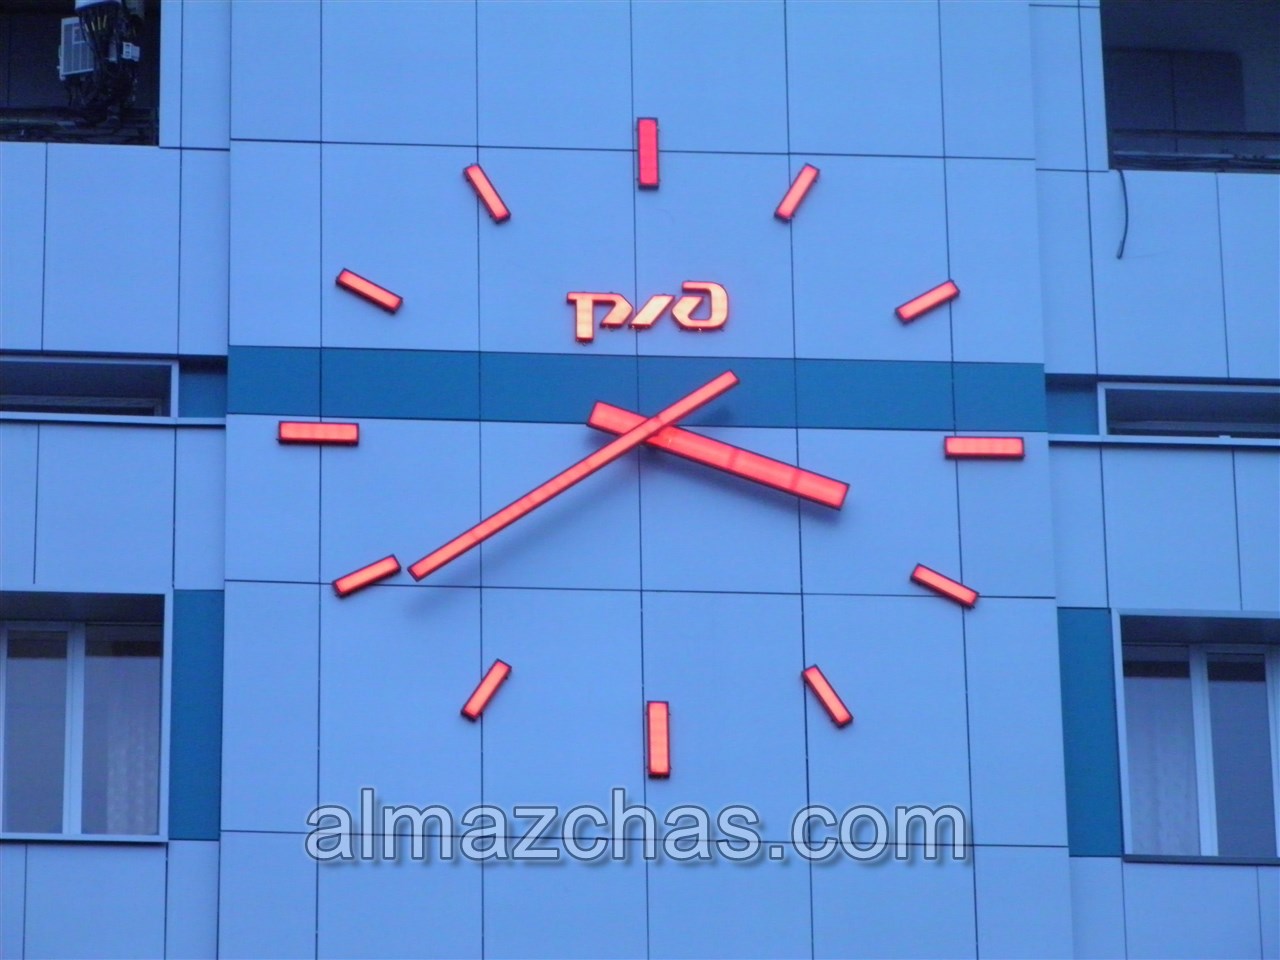 монтаж 5-ти метровых часов, на фасаде здания ж/д вокзала фото один